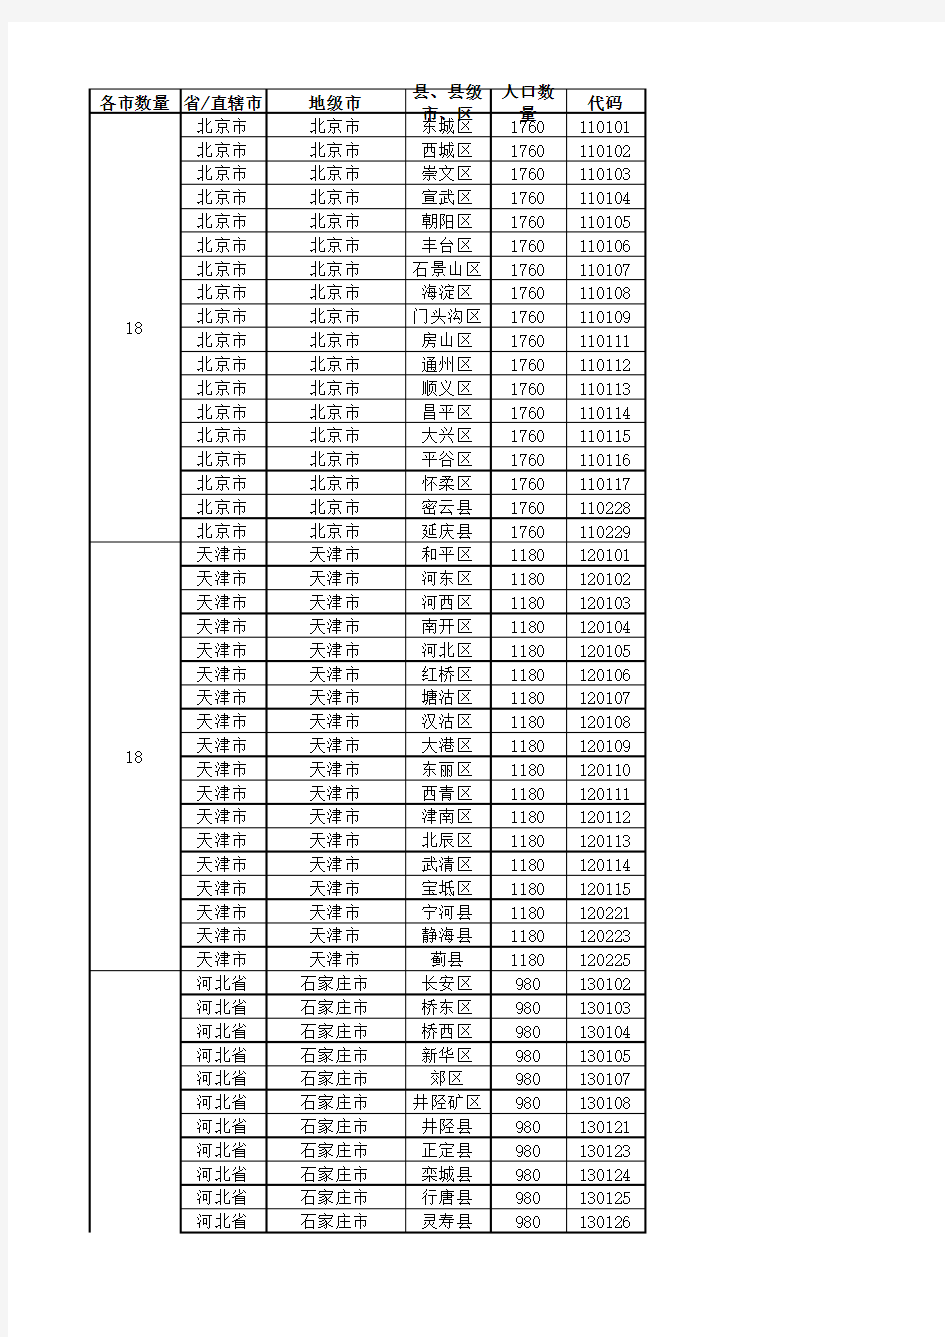 最新全国城市省市县区行政级别对照表.xls